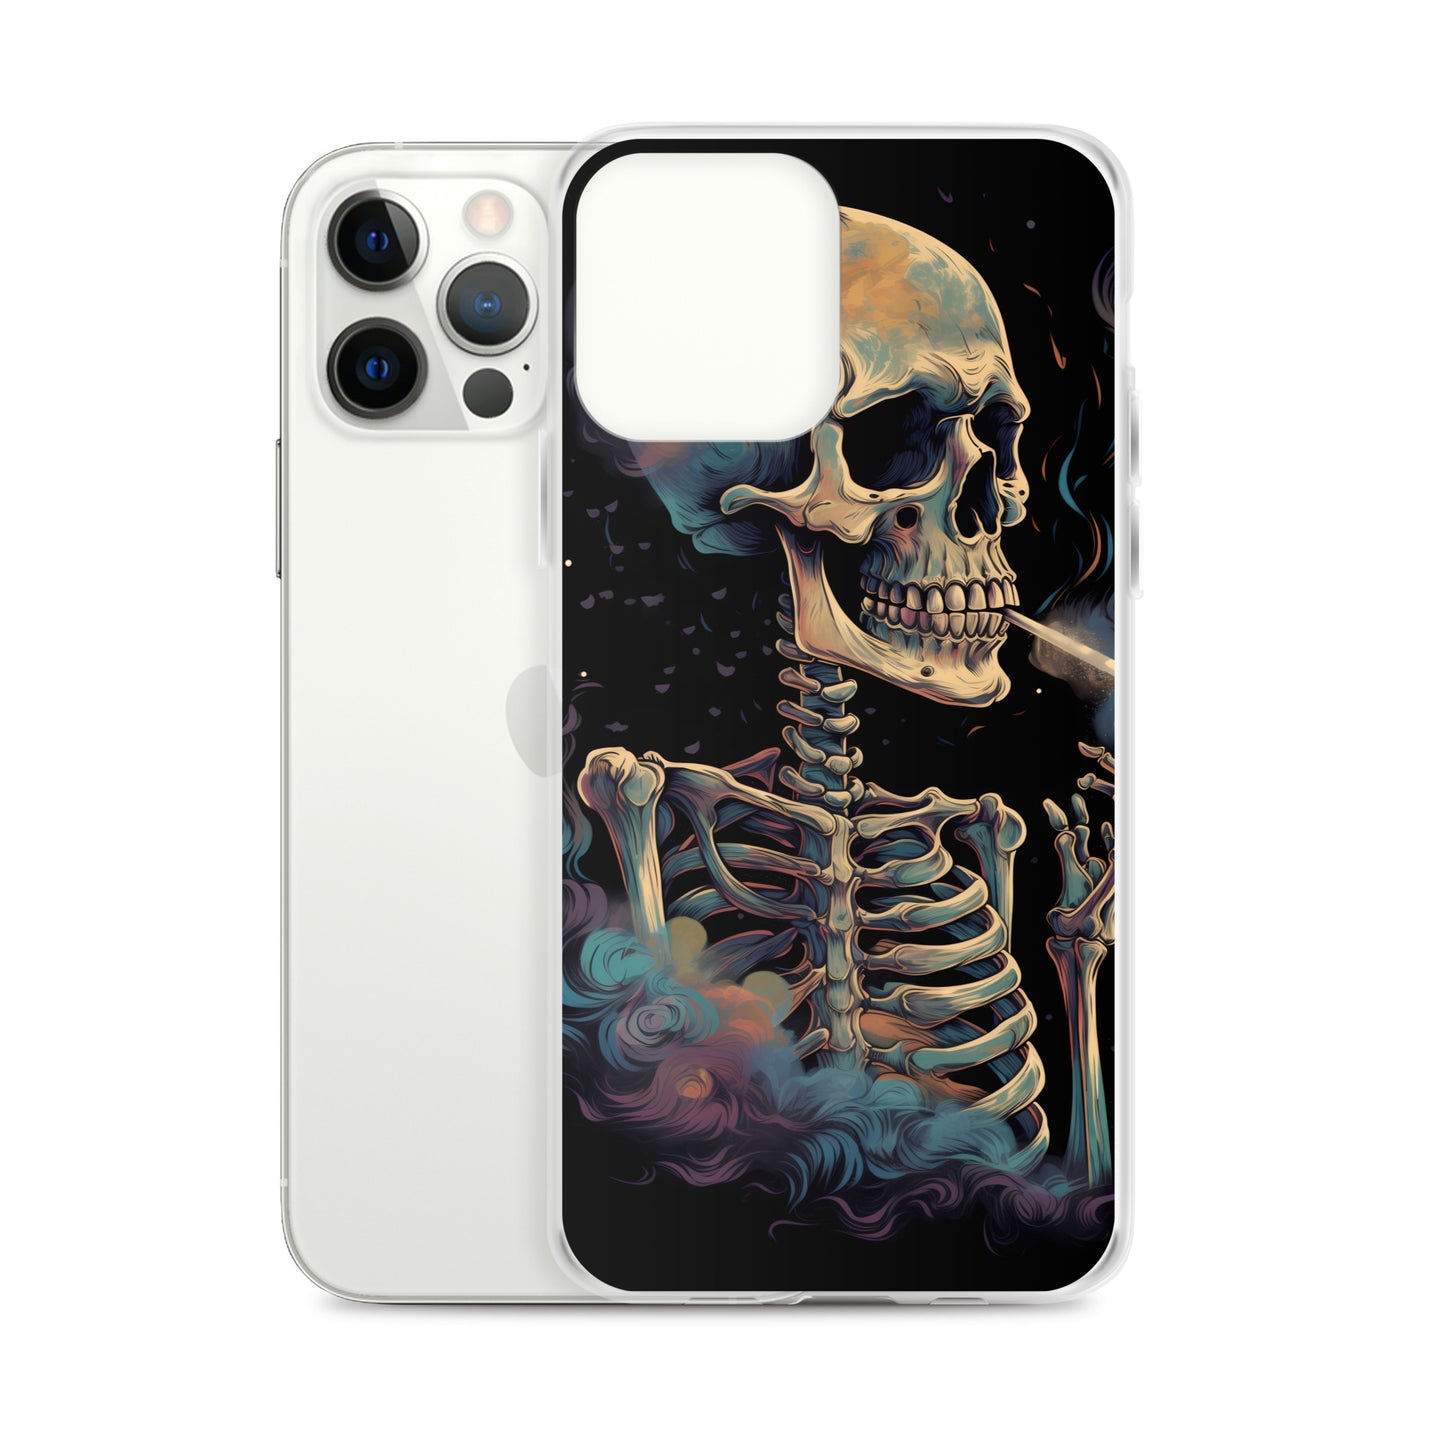 iPhone Case - Cosmic Skeleton Smoking